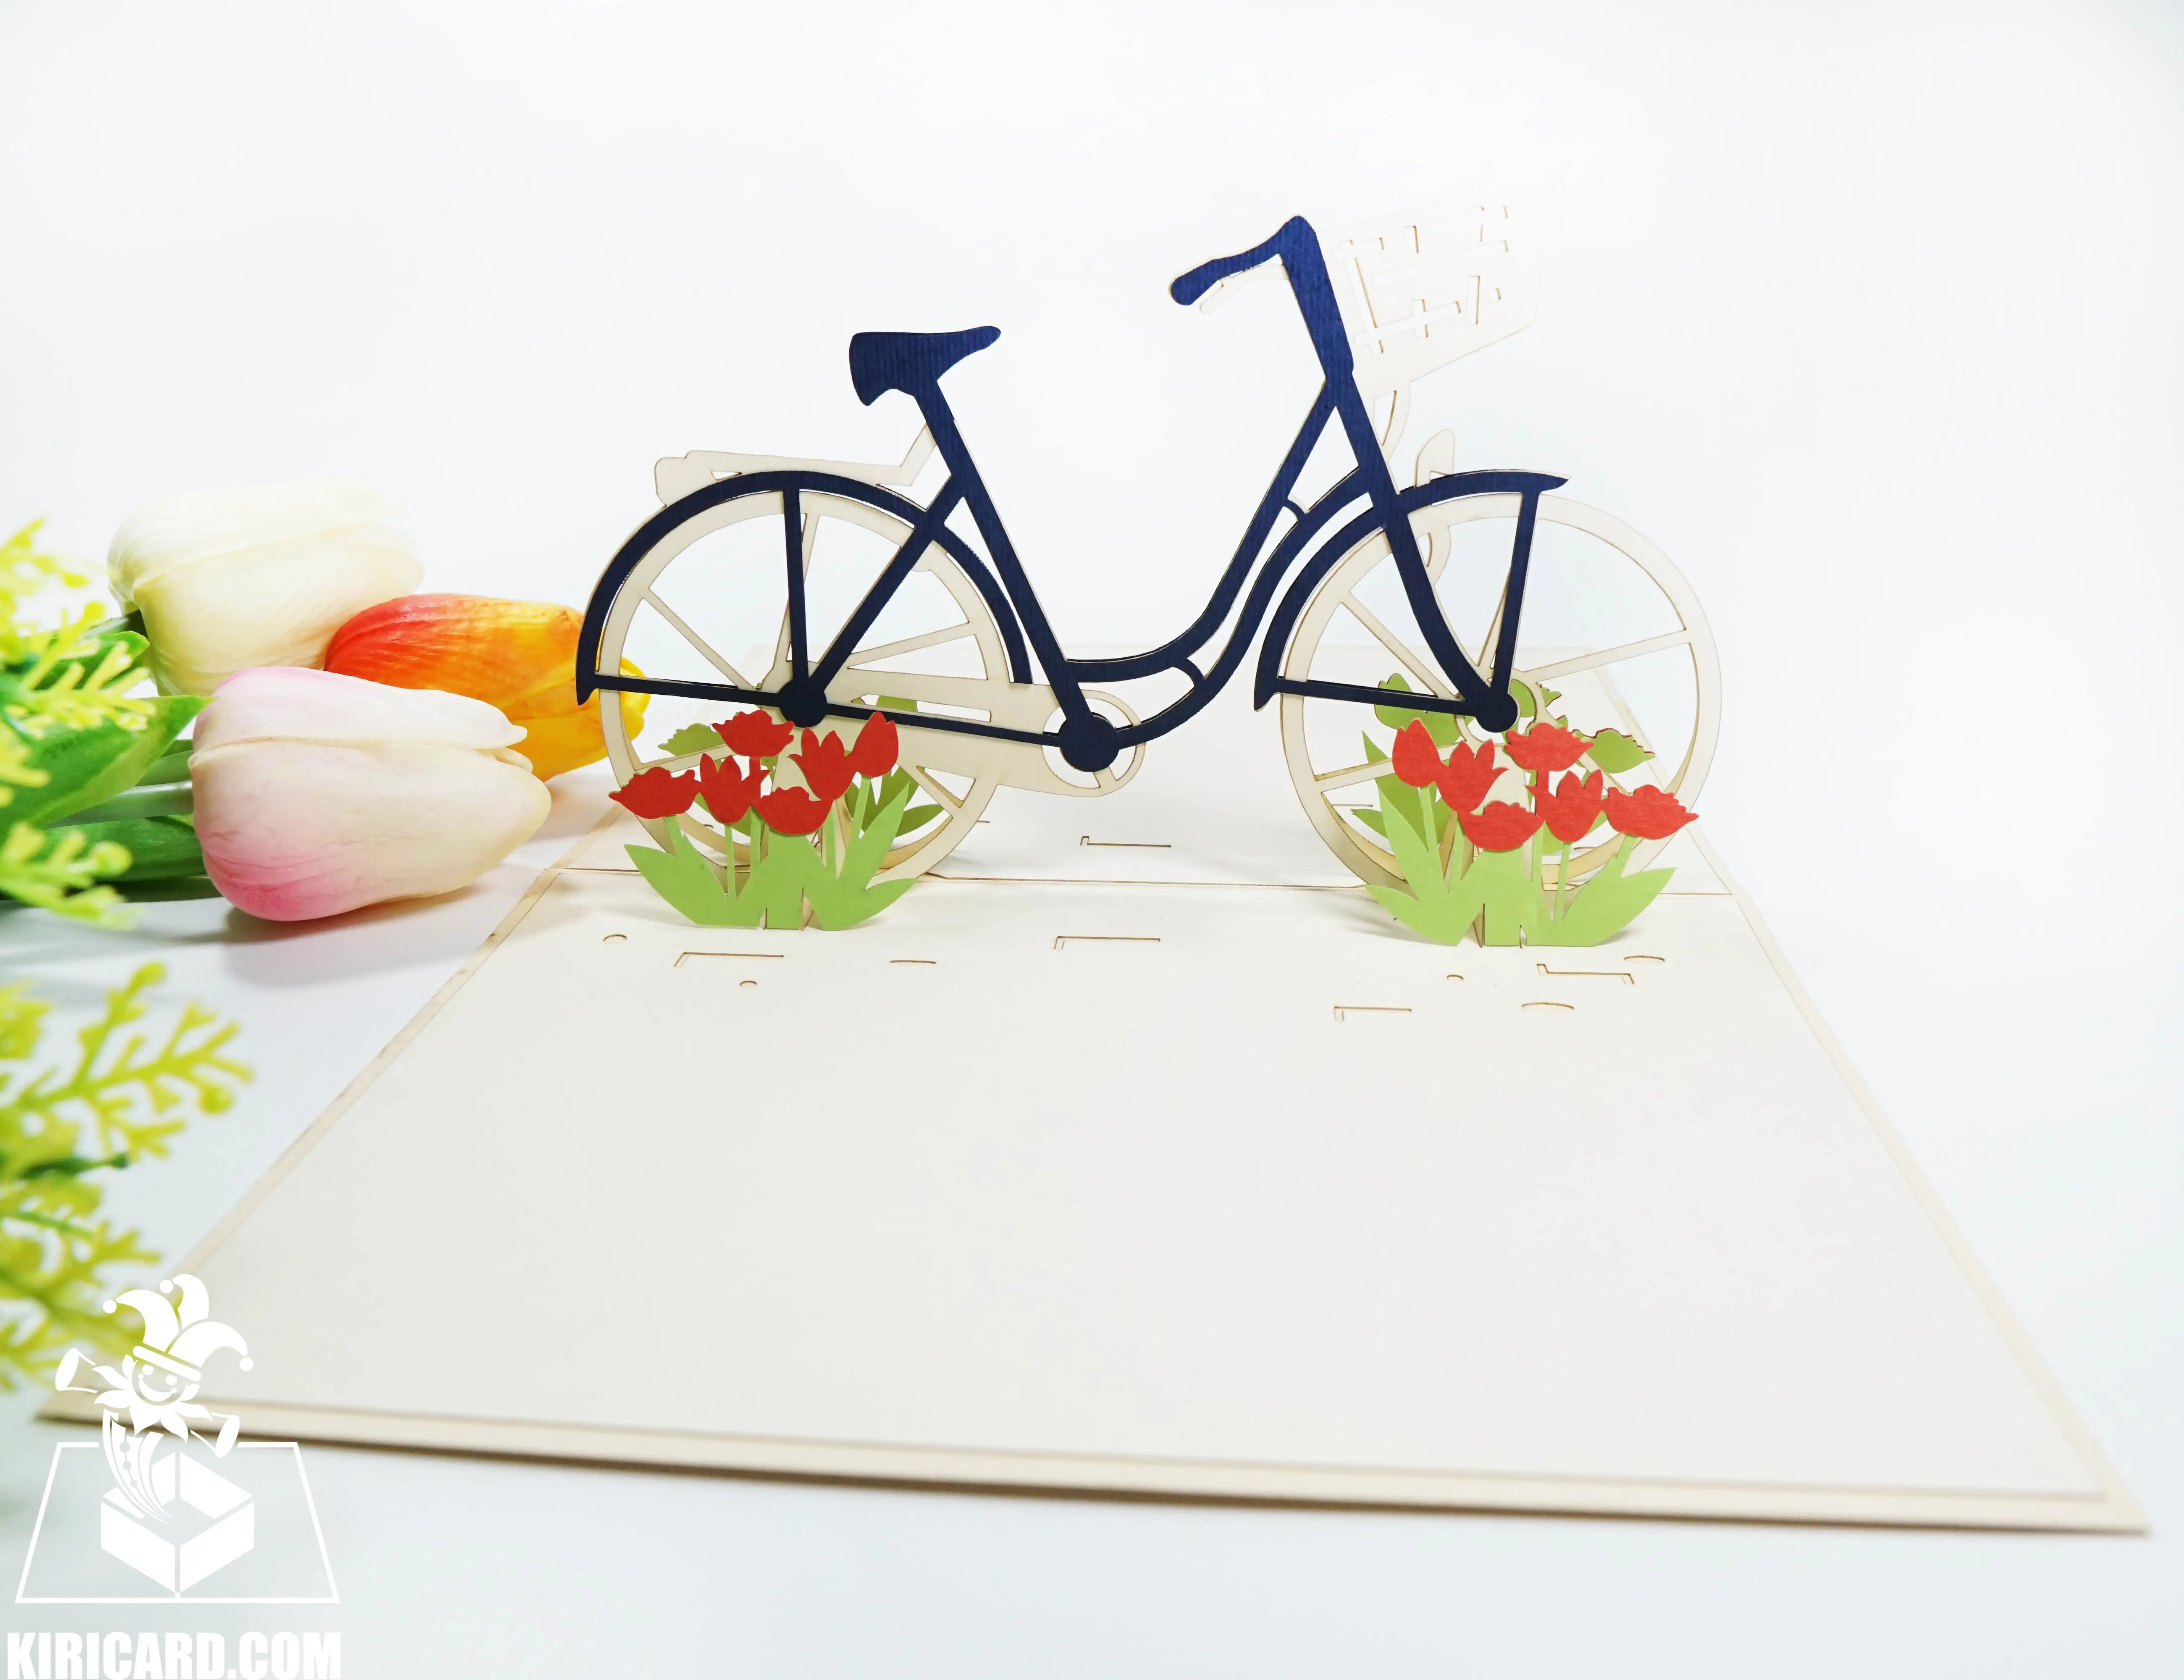 Novo design de cartão kirigami 3D, cartão floral de bicicleta pop-up, preço barato por atacado, cartão de aniversário artesanal